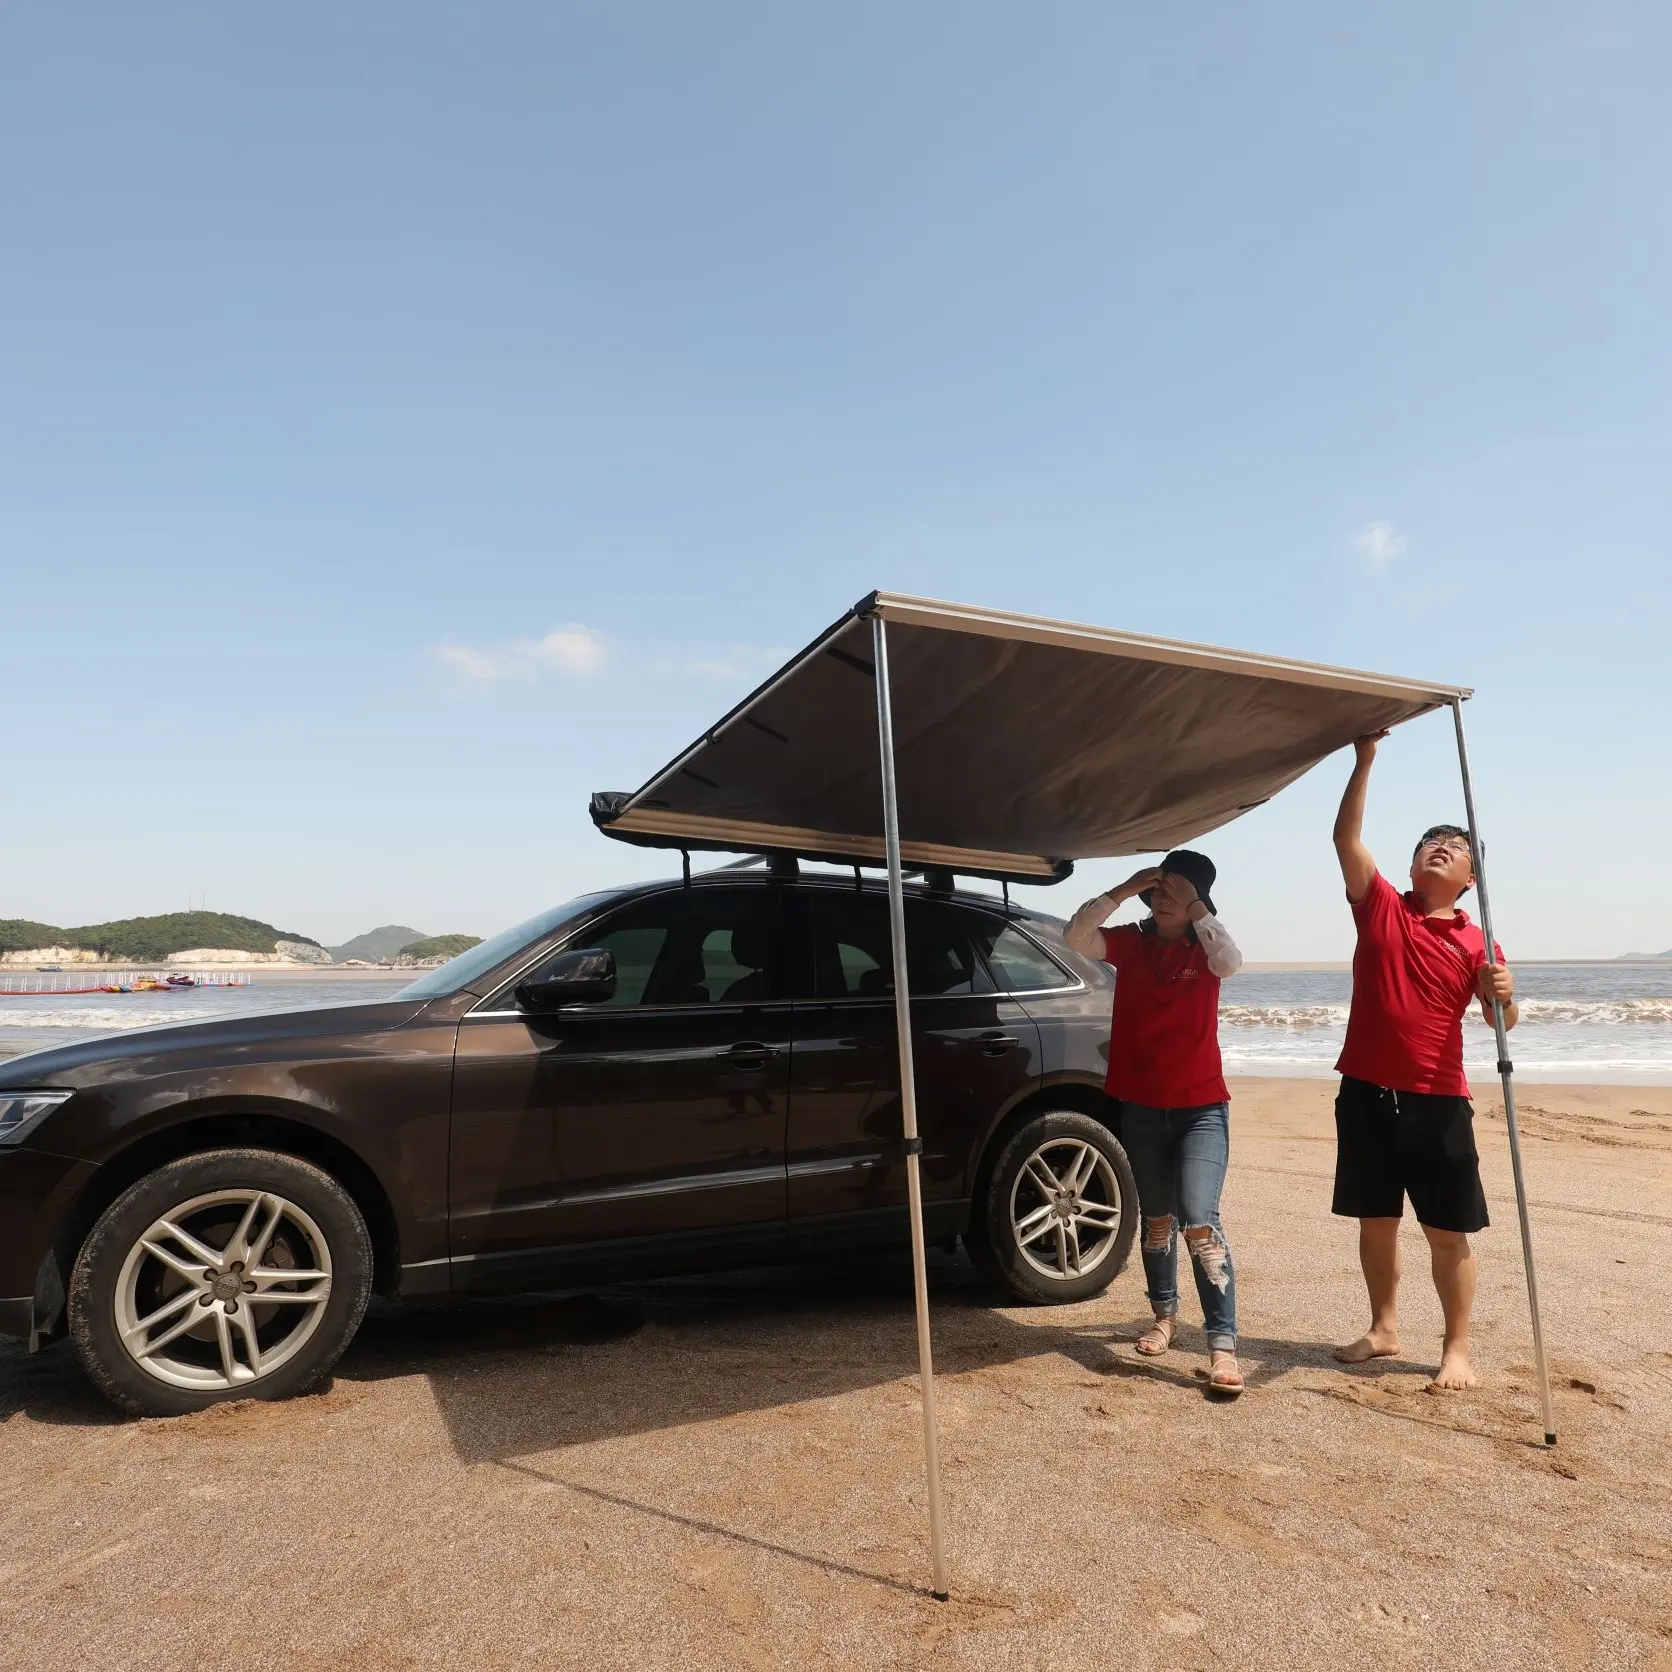 Awnlux 알루미늄 프레임 캠핑카 오프로드 SUV 자동차 사이드 스와그 가방 천막